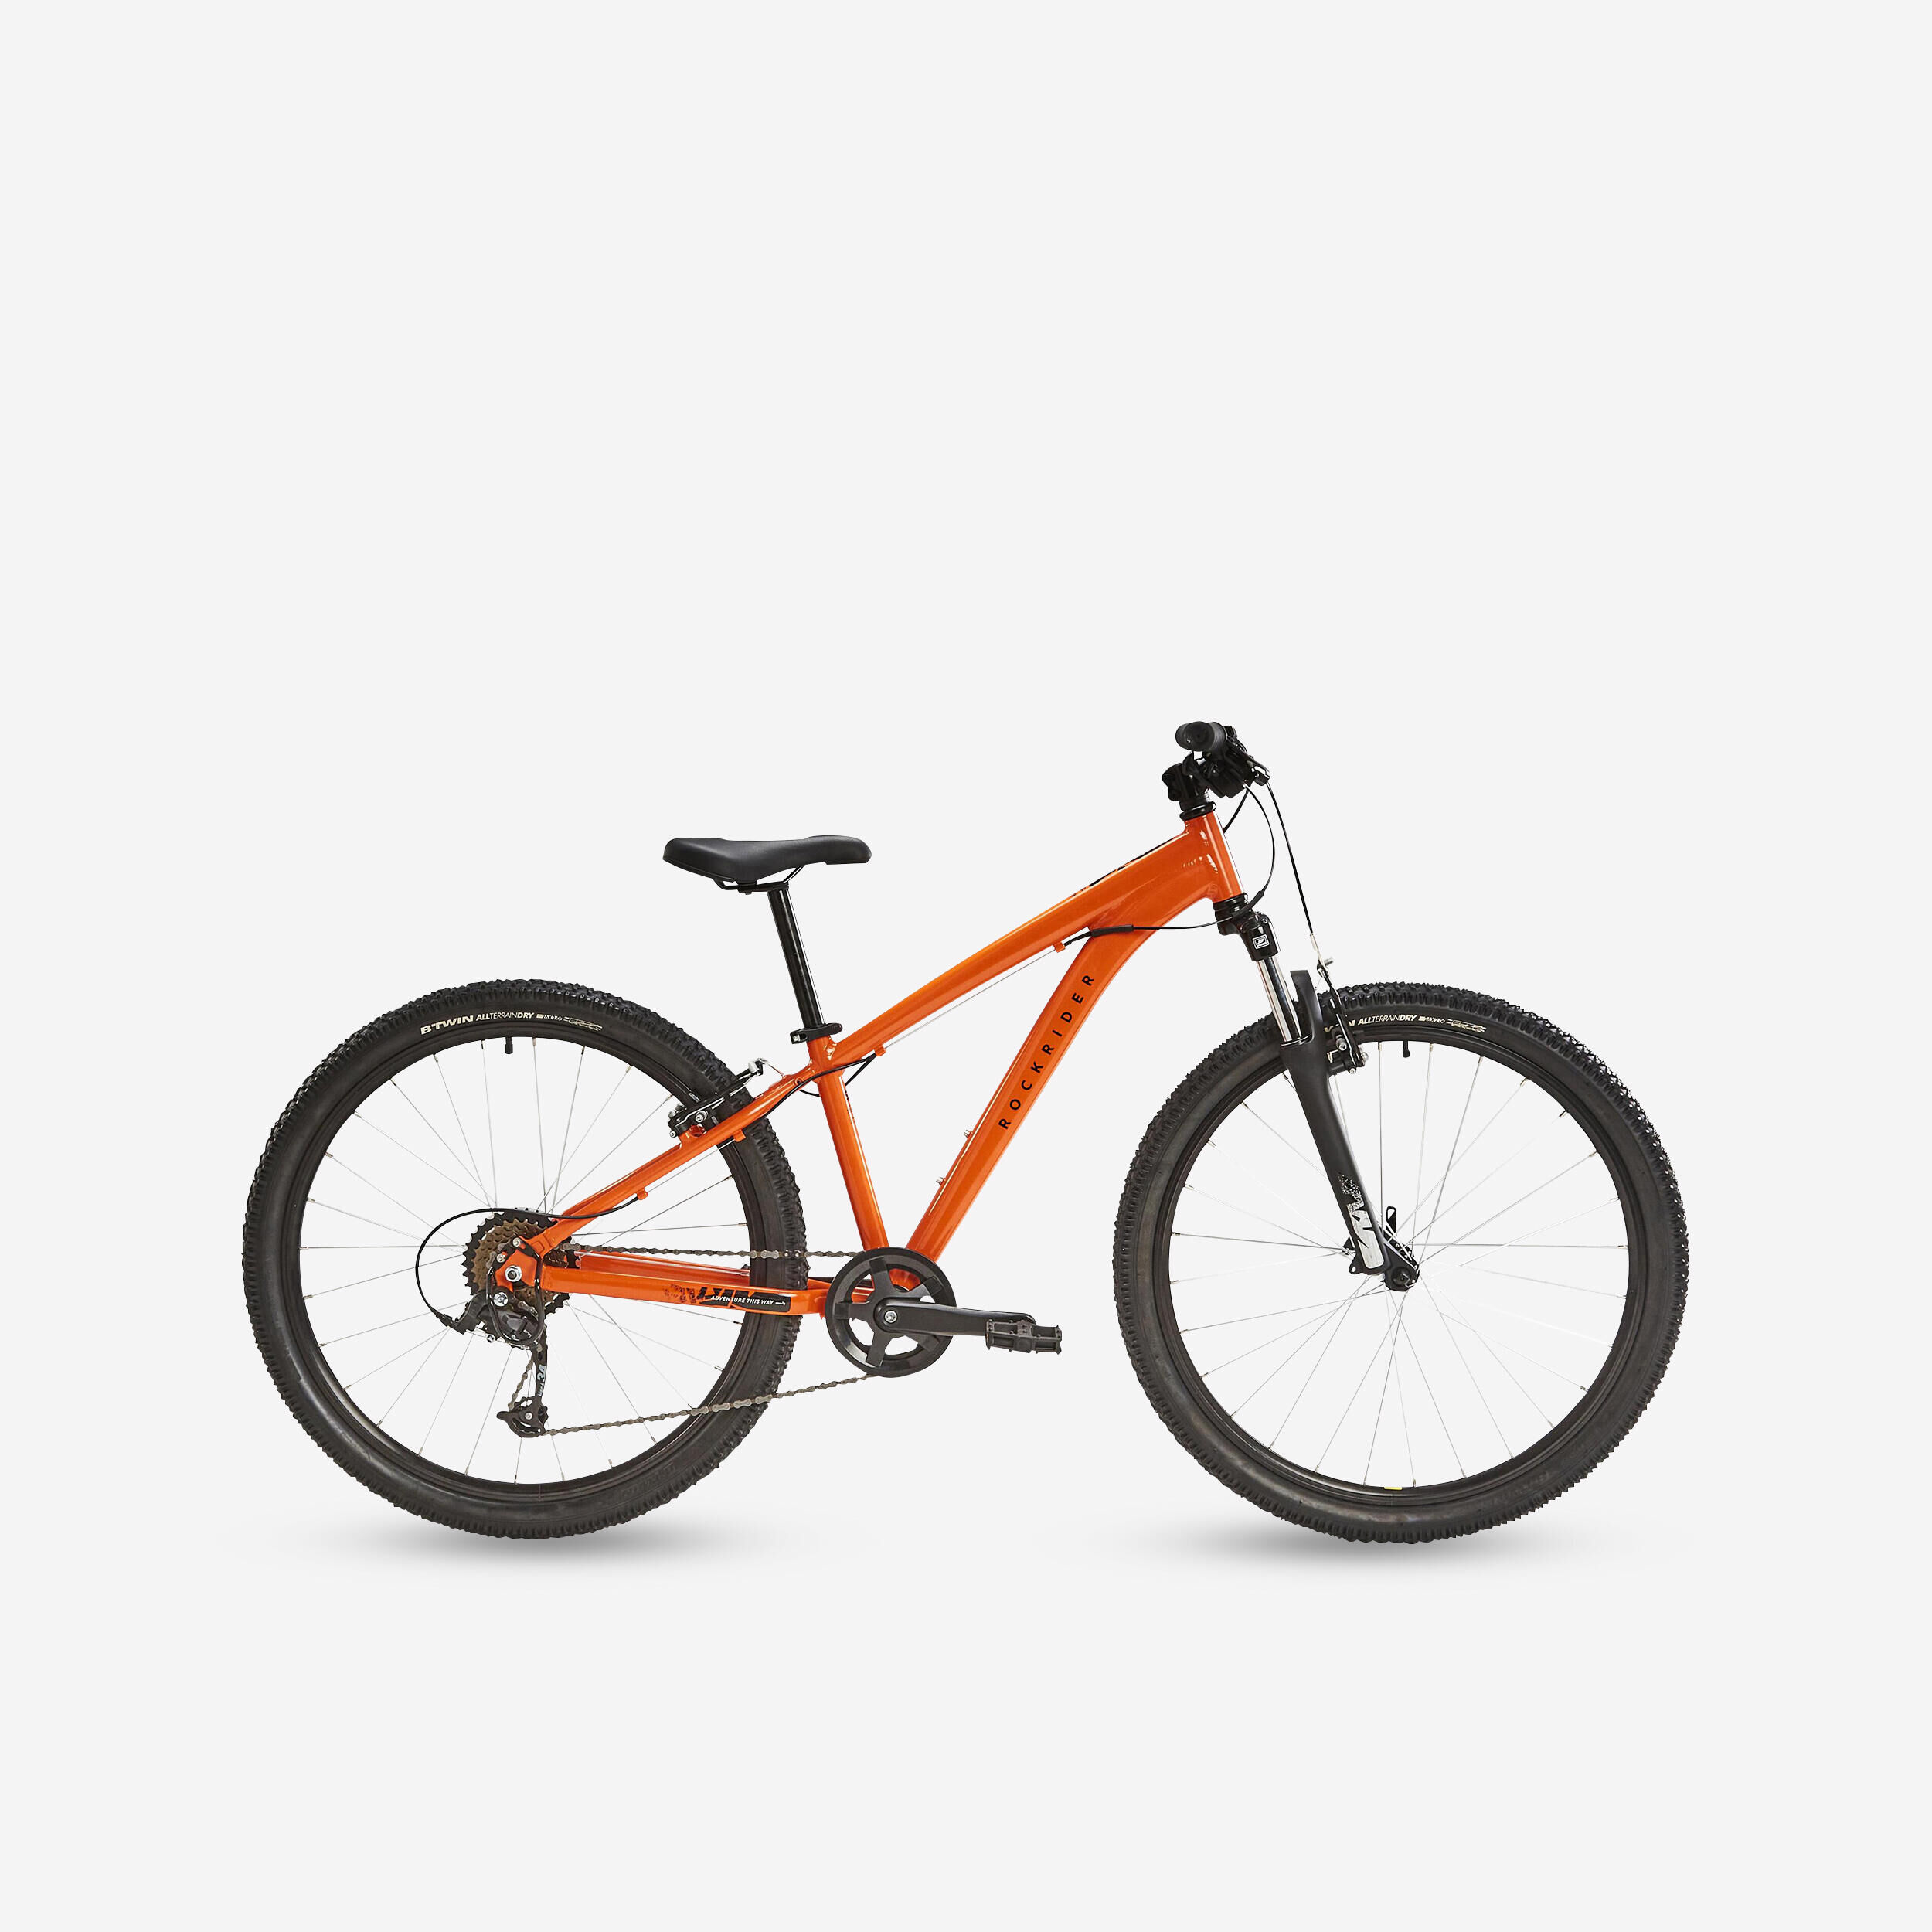 ROCKRIDER Kids' 26-inch lightweight aluminium mountain bike, orange